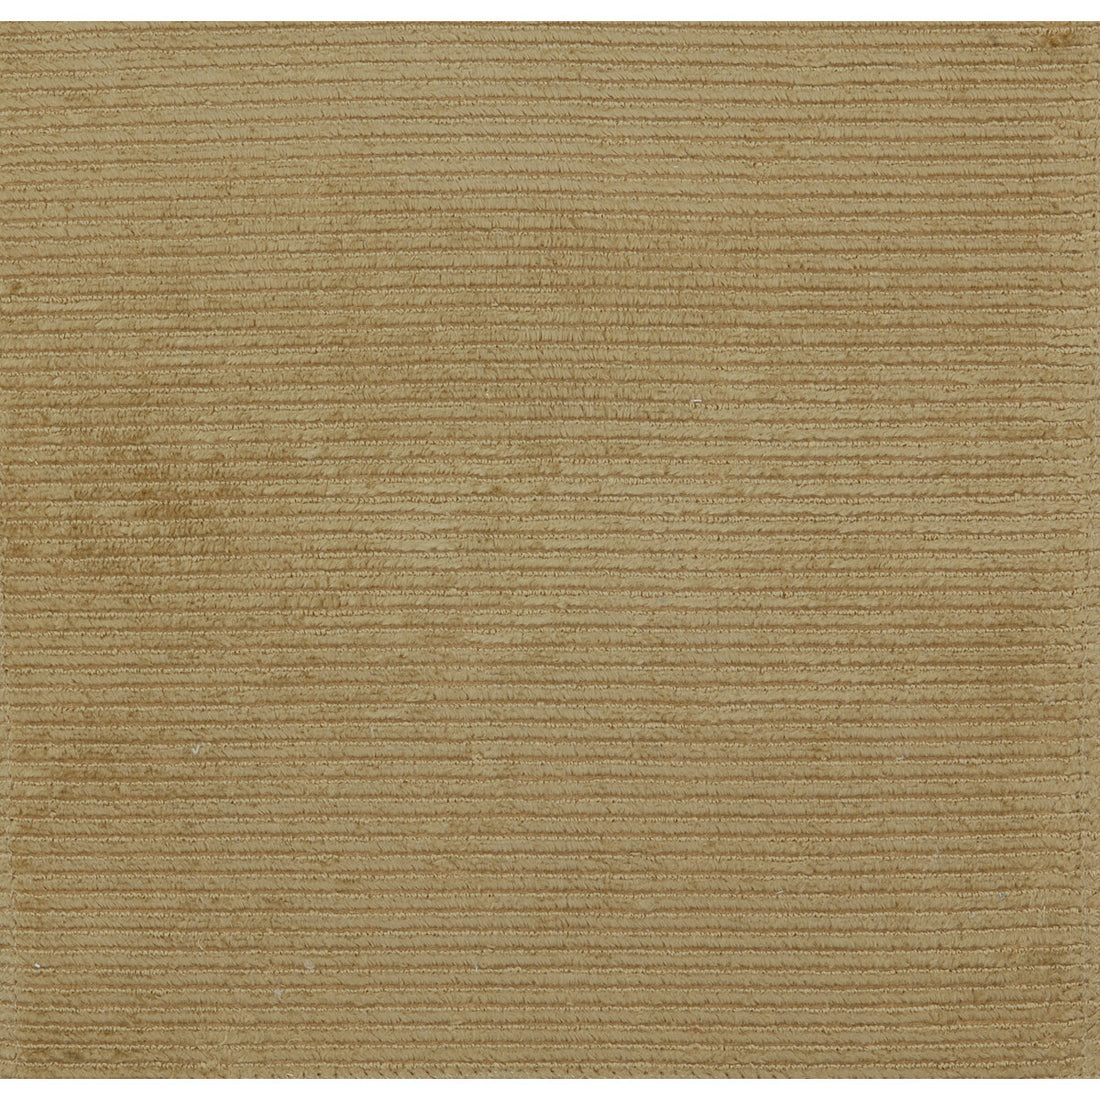 Mozart Vel Emb fabric in sable color - pattern BR-81112.V.0 - by Brunschwig &amp; Fils